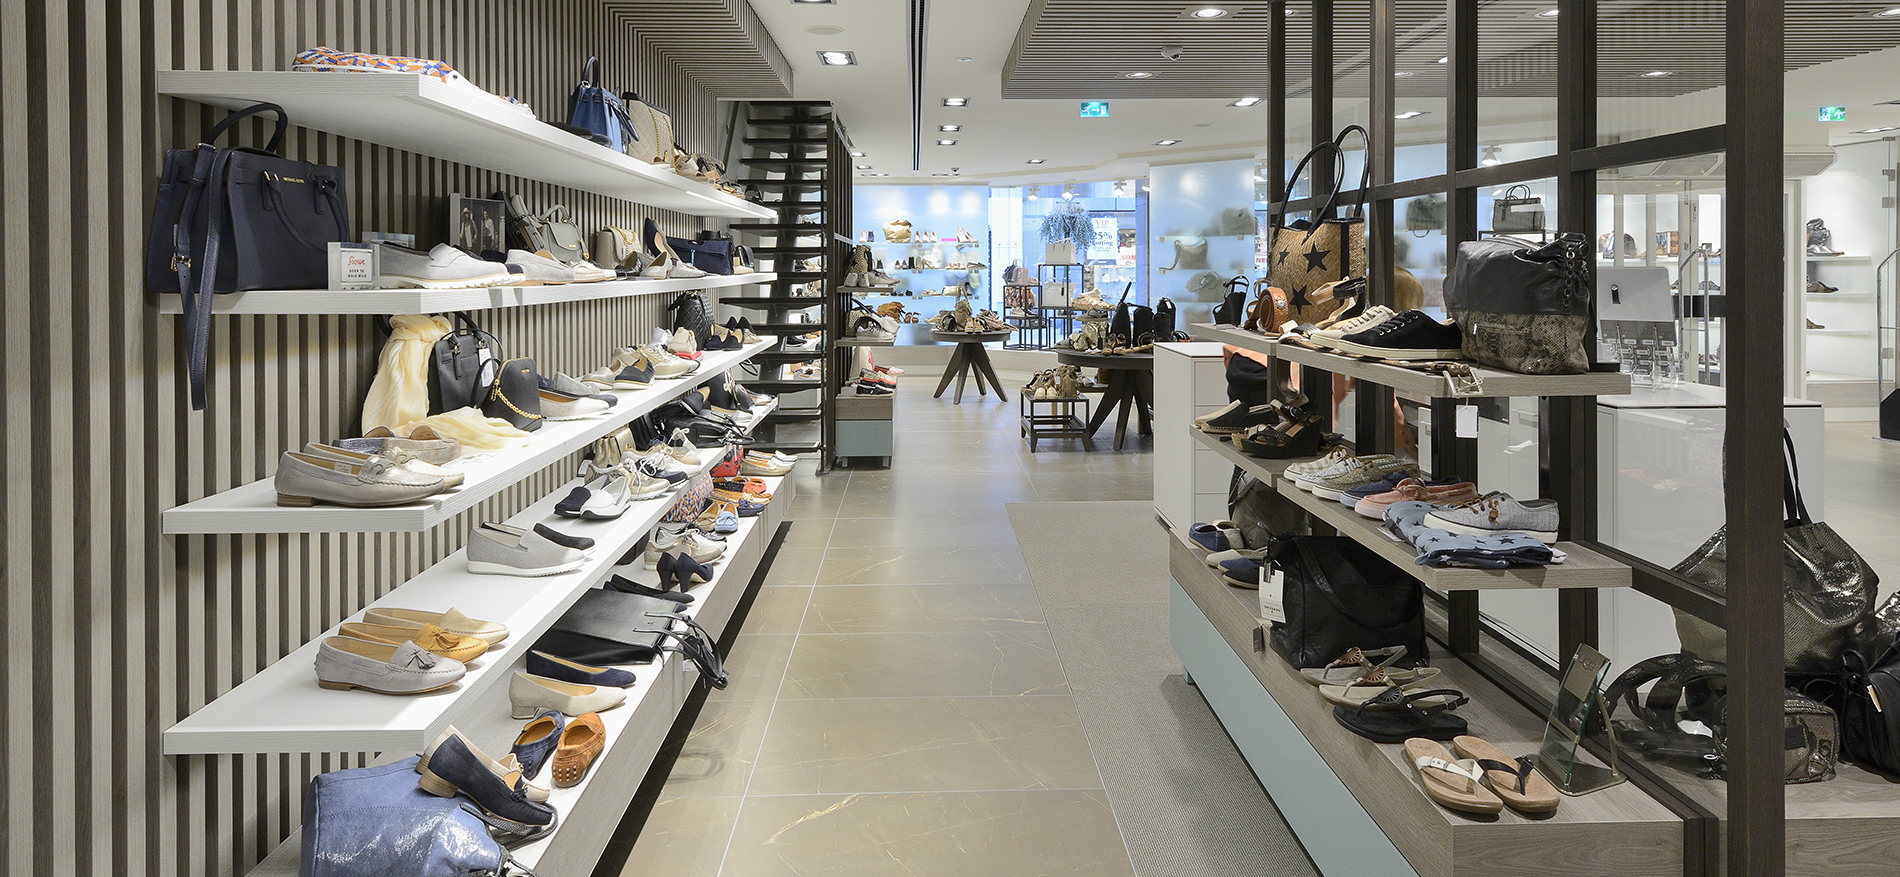 Shuz in Wassenaar: Retail design shoes conceptstore - 